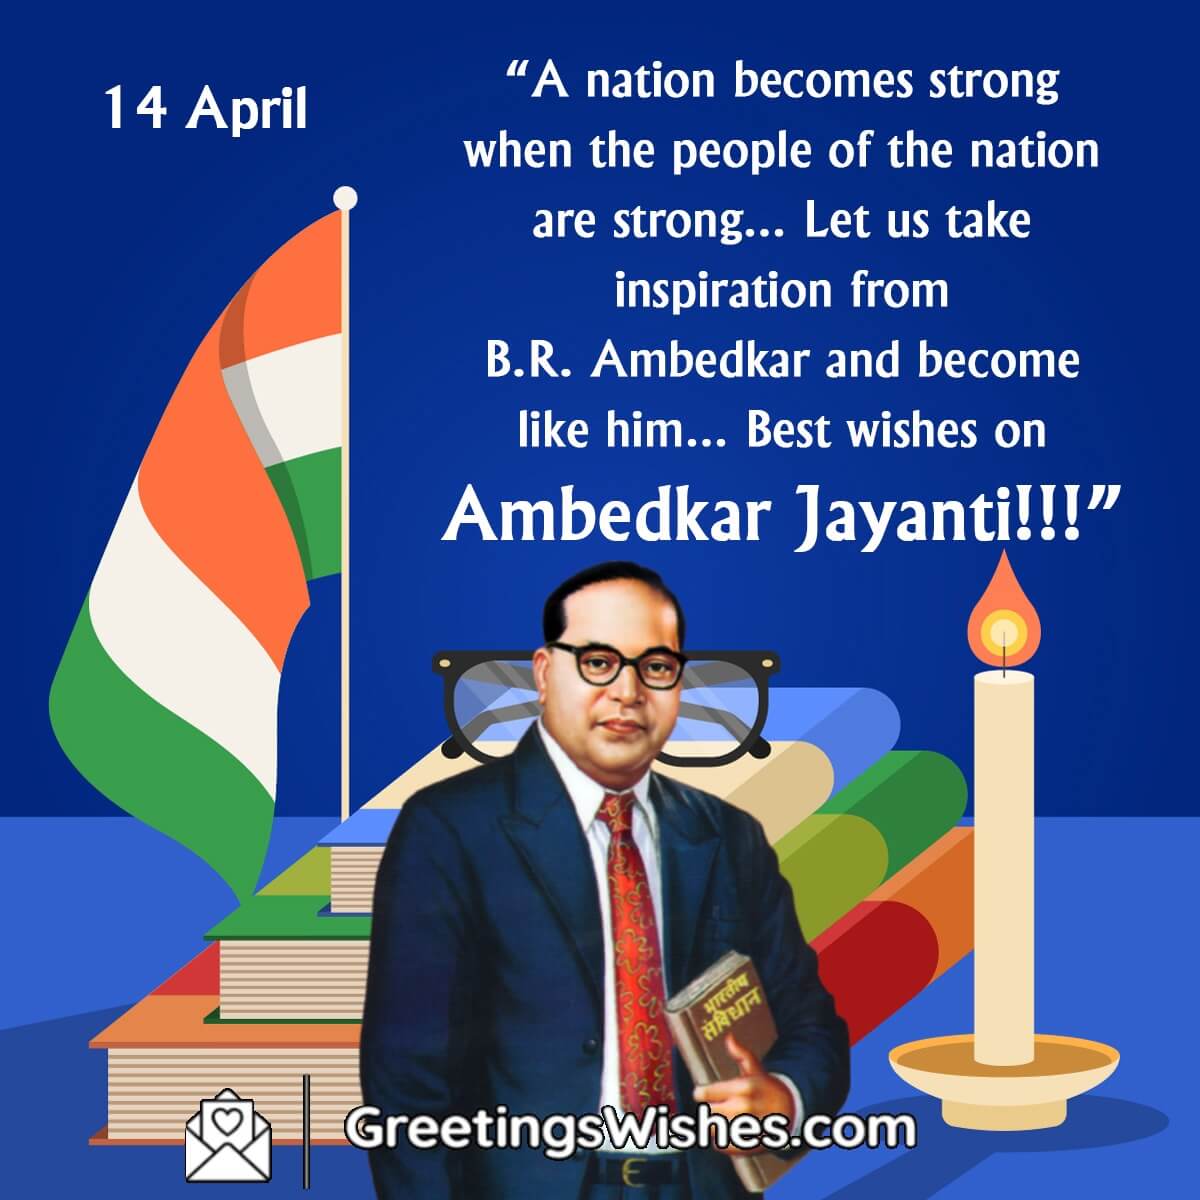 Ambedkar Jayanti Messages